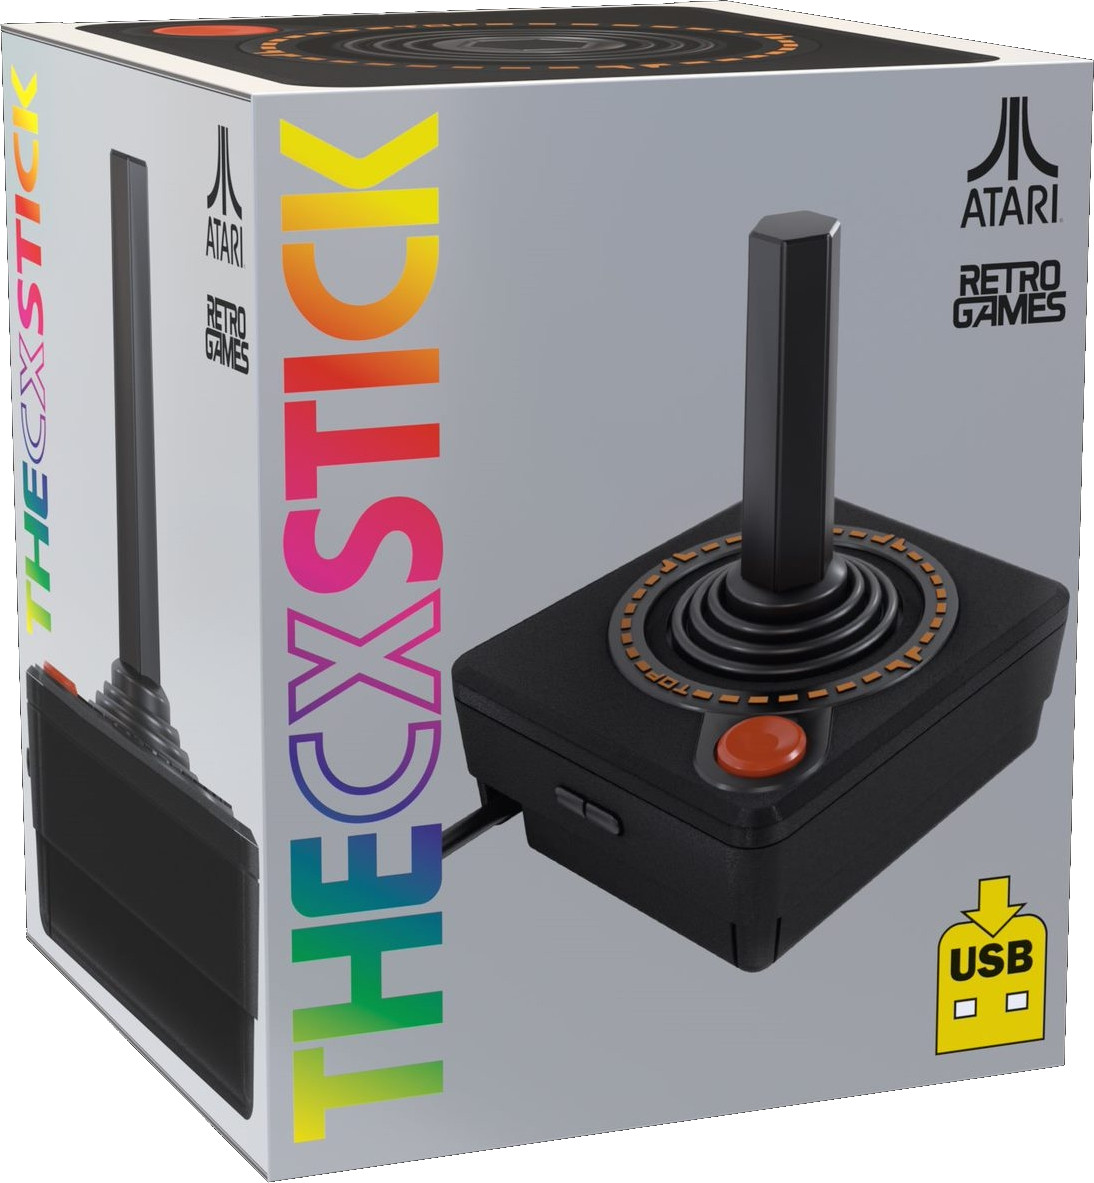 Retro Games THECXSTICK (Solus Atari USB Joystick - Black)